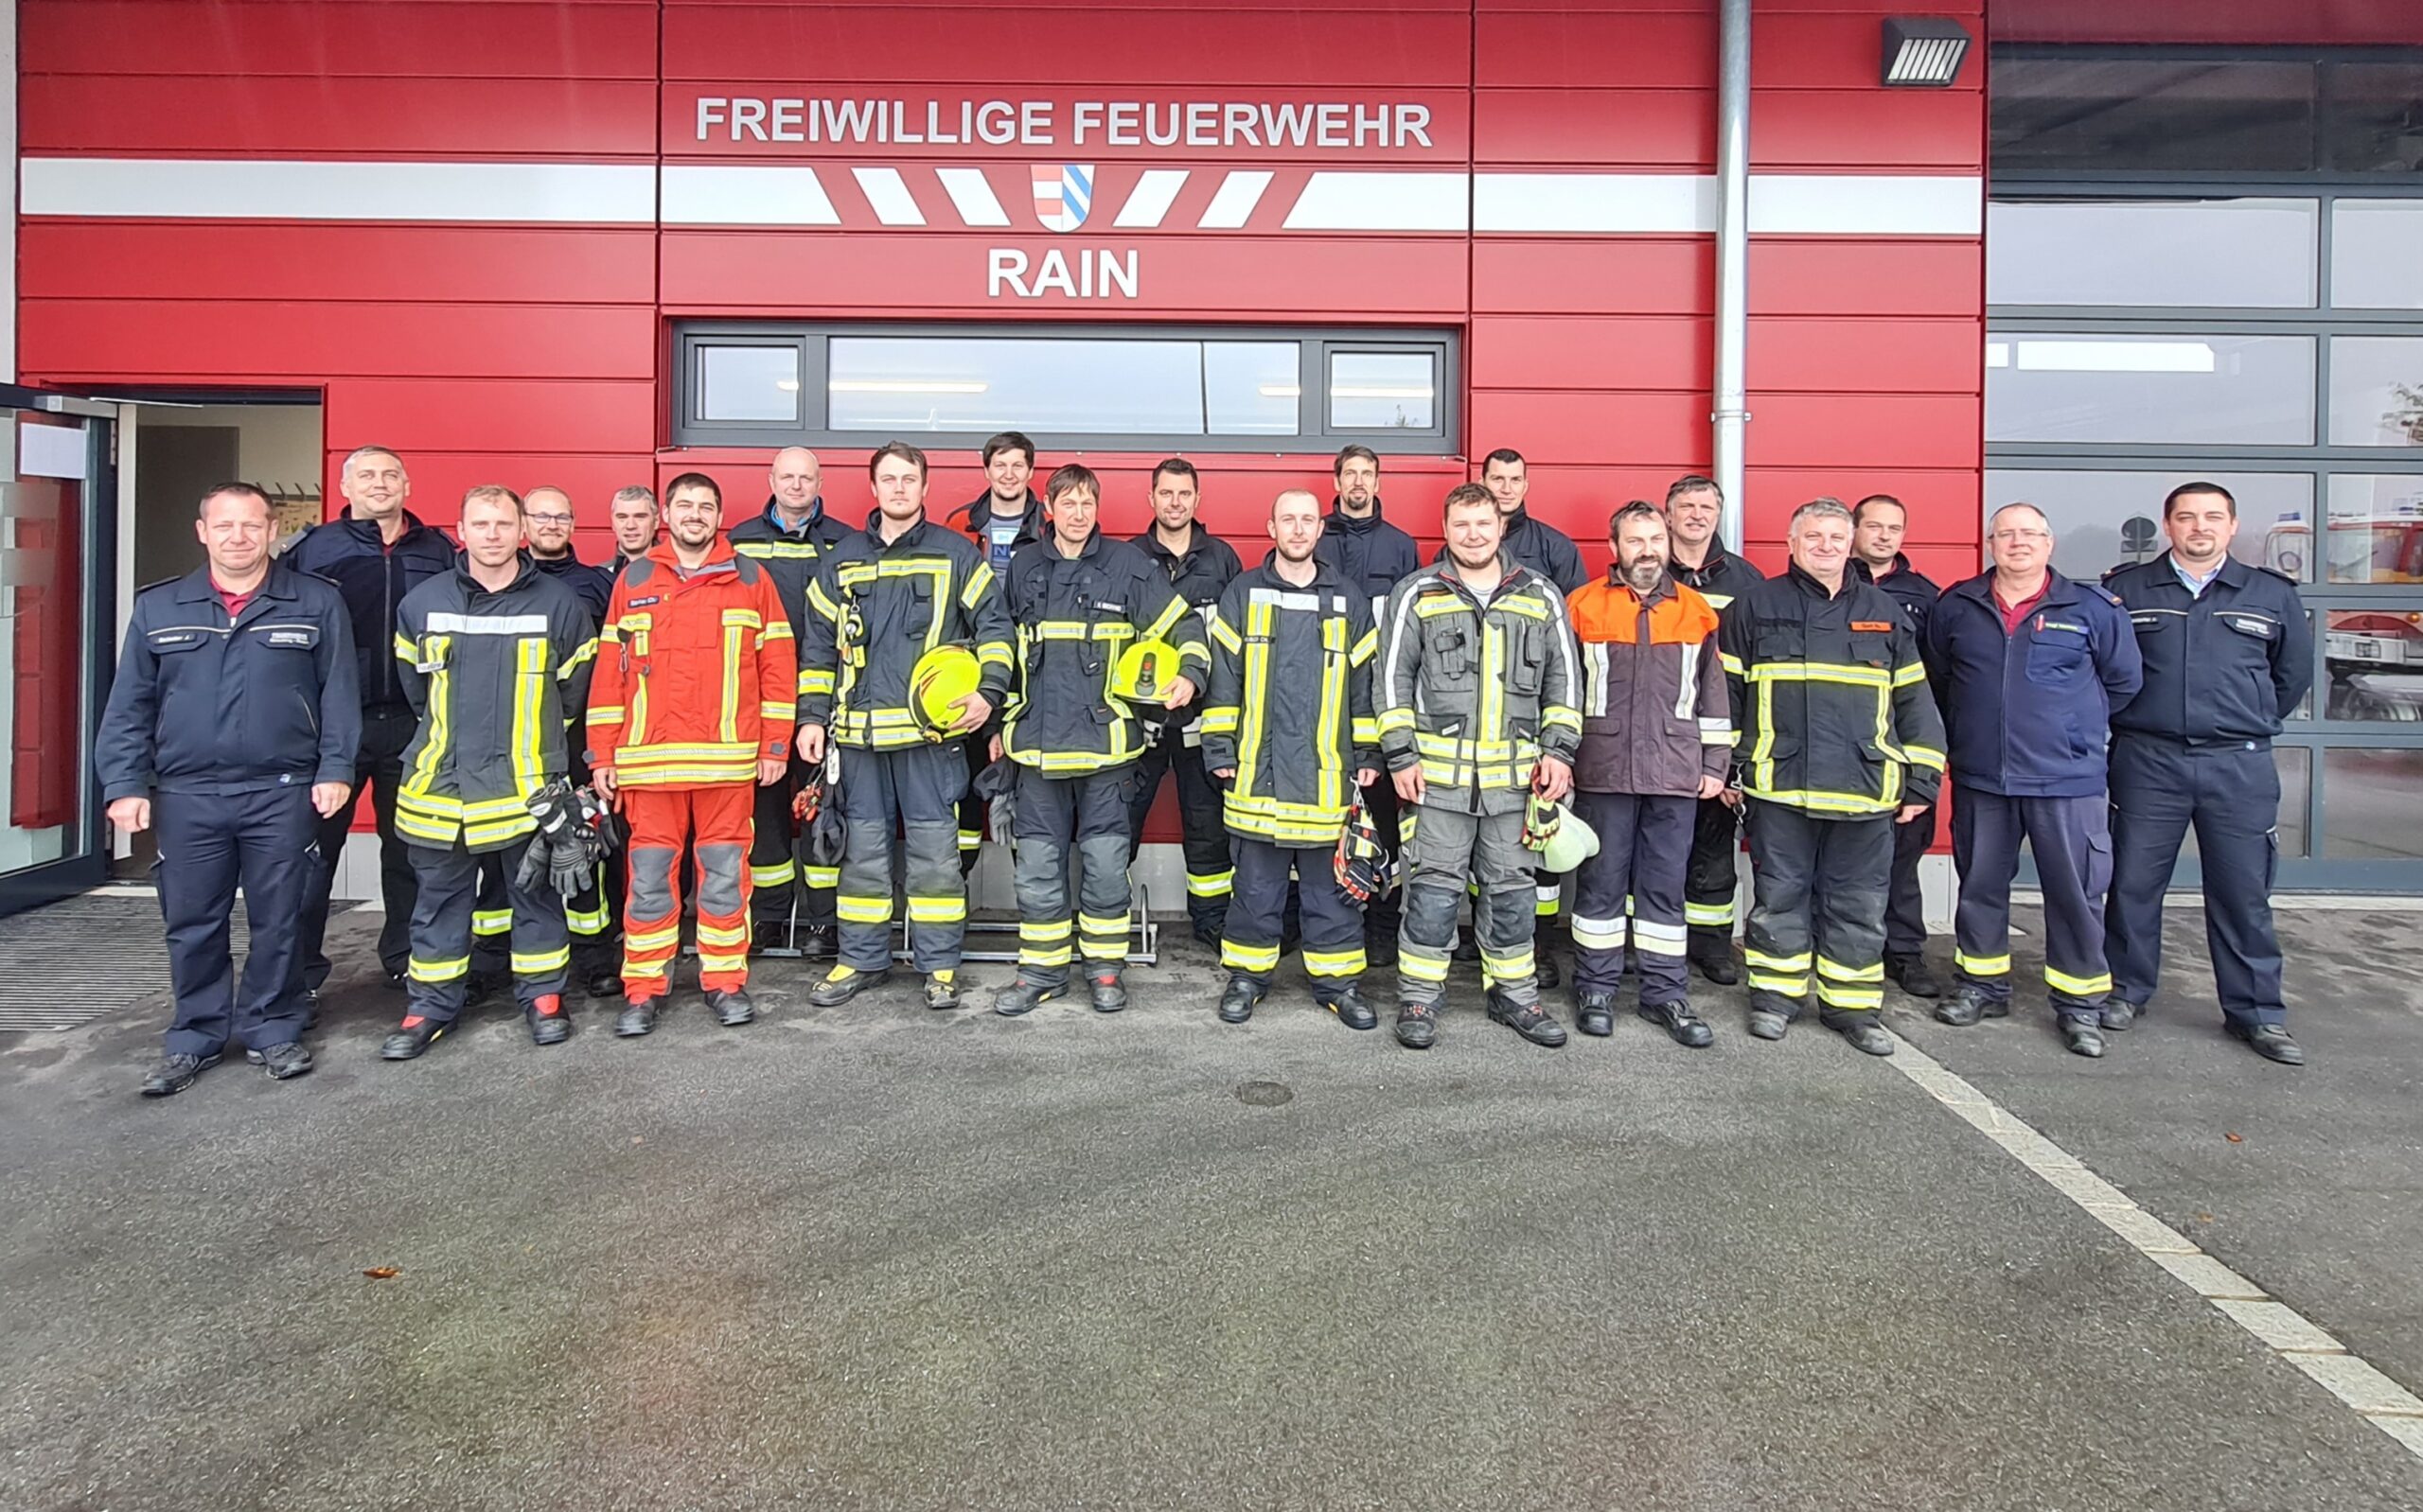 Die Teilnehmer an der Feuerwehrfortbildung vor dem Feuerwehrhaus in Rain.